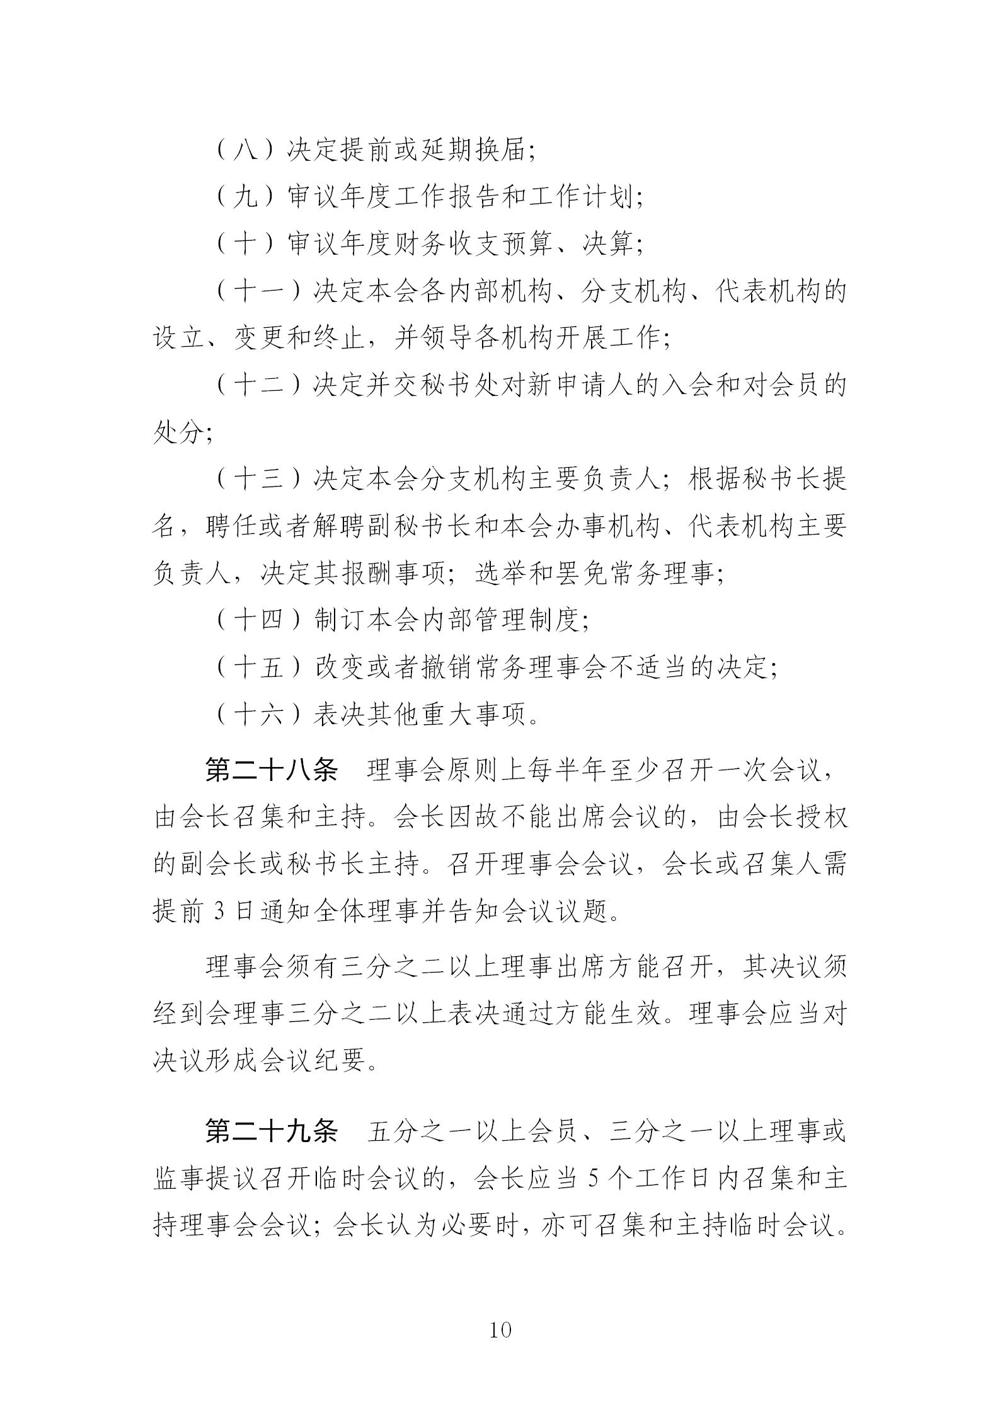 3-广东省羽毛球协会新章程20221107-根据民政厅修改意见修改_10